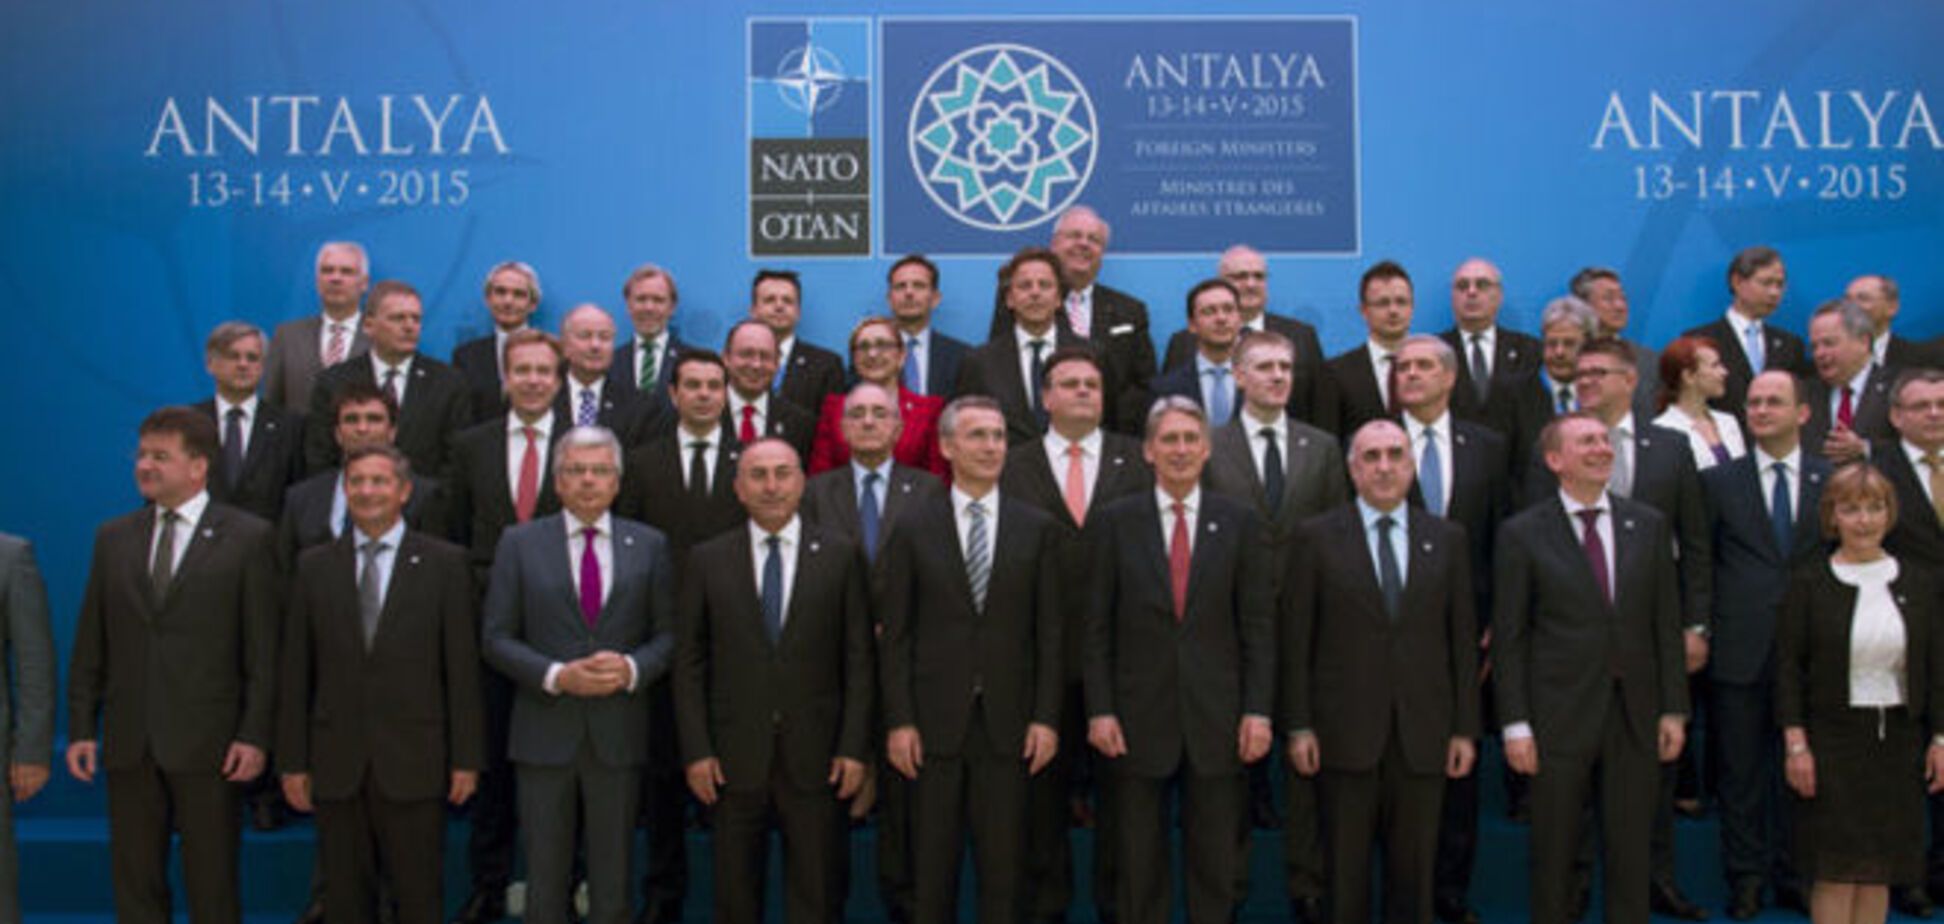 Схетына рассказал, почему саммит НАТО в Варшаве будет переломным для ЕС